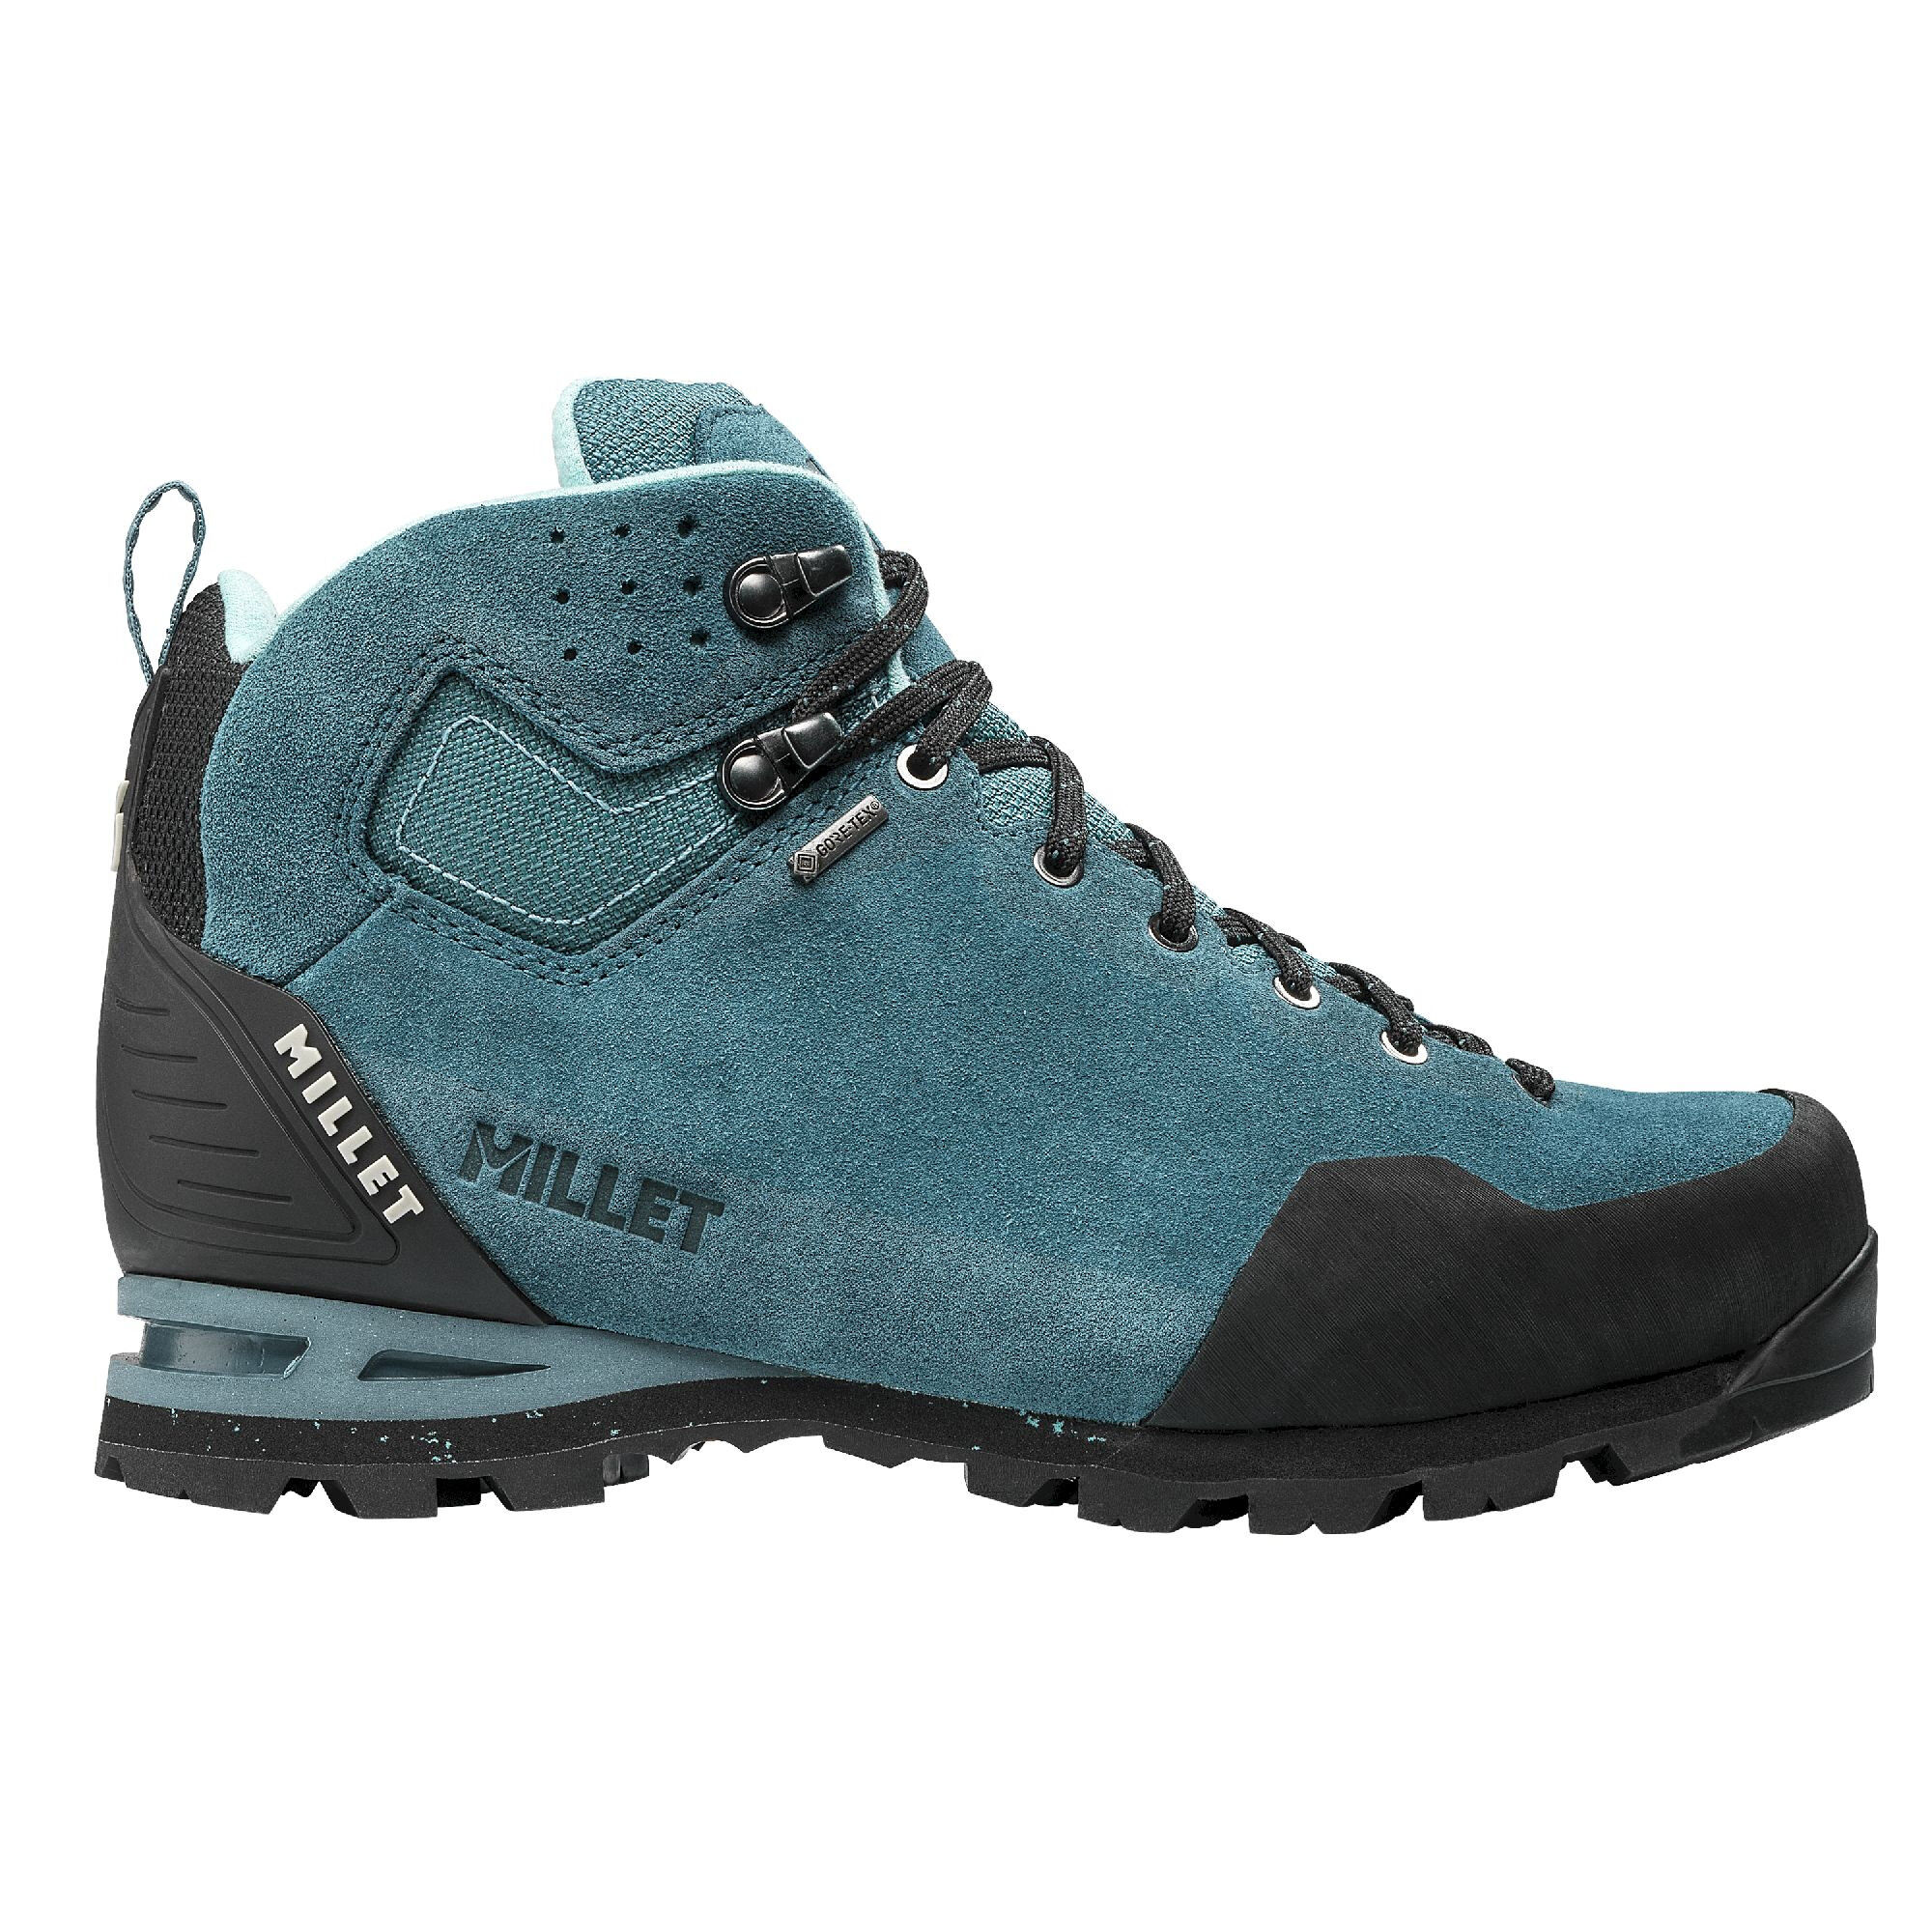 Millet G Trek 3 GTX - Hiking boots - Women's